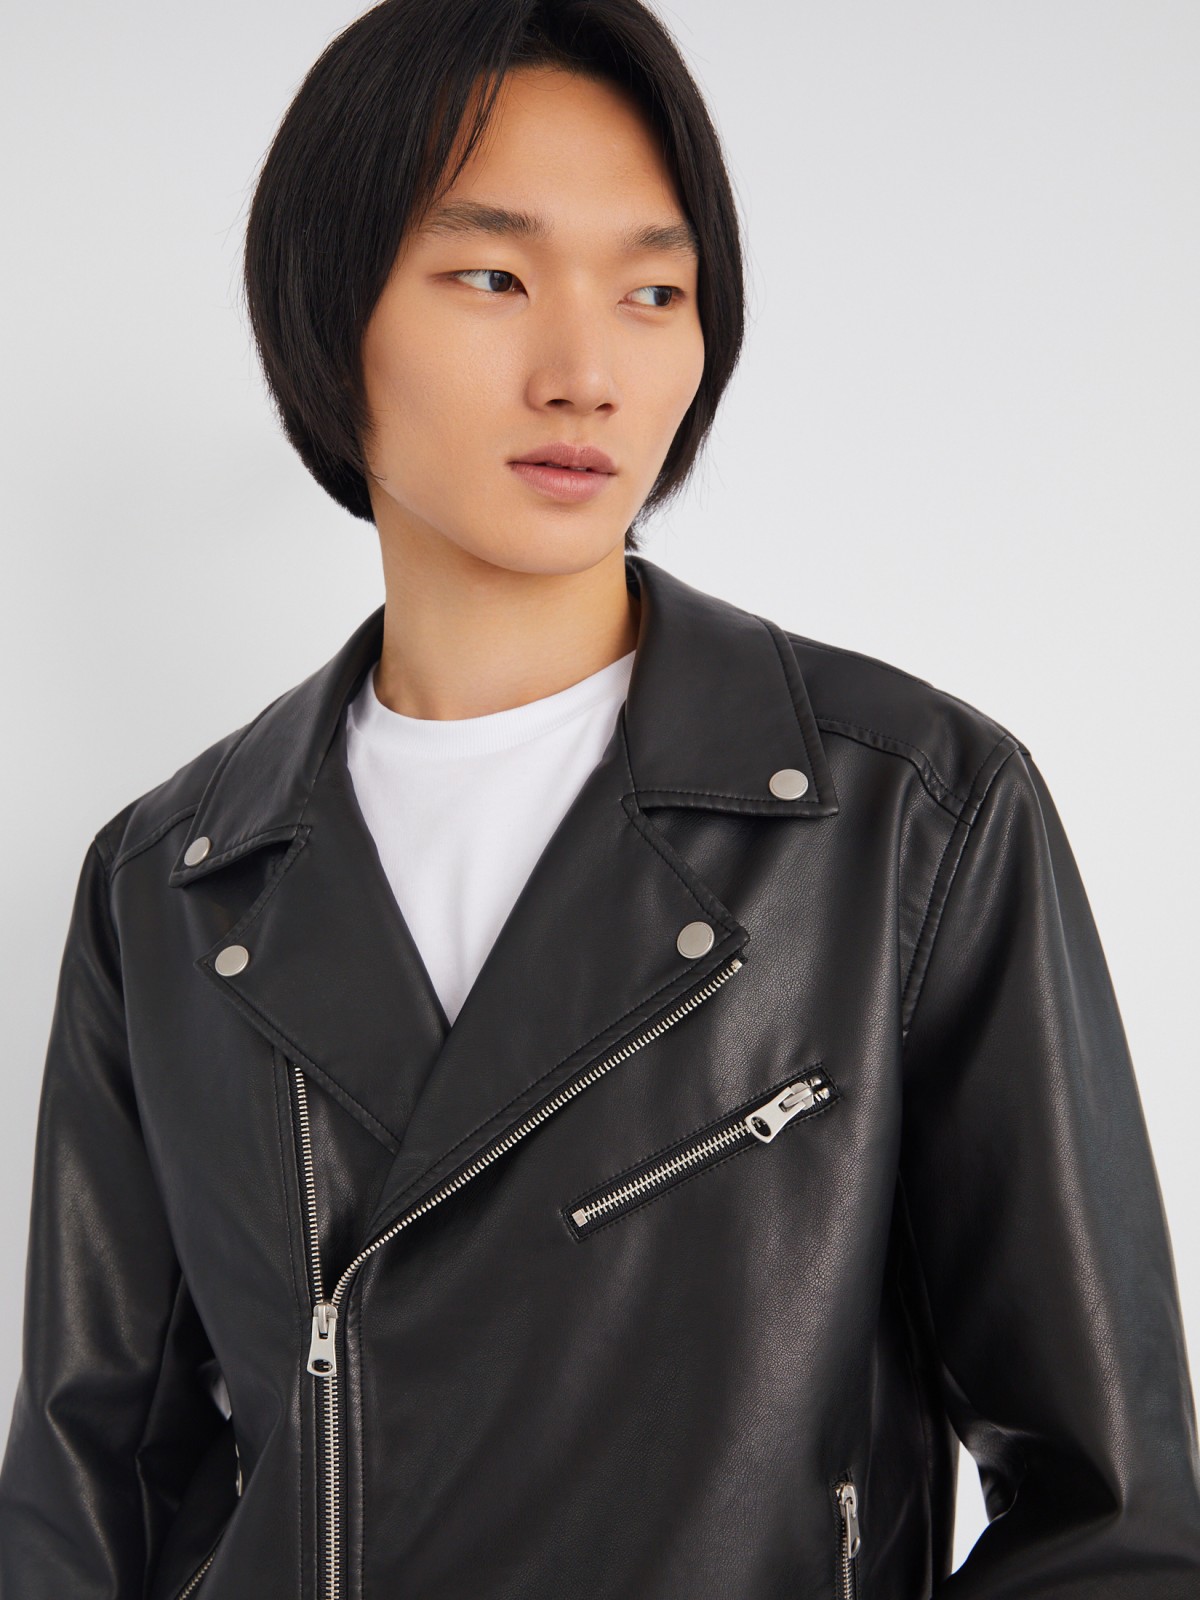 Кожаная куртка-косуха из экокожи без утеплителя zolla 013325650034, цвет черный, размер S - фото 5